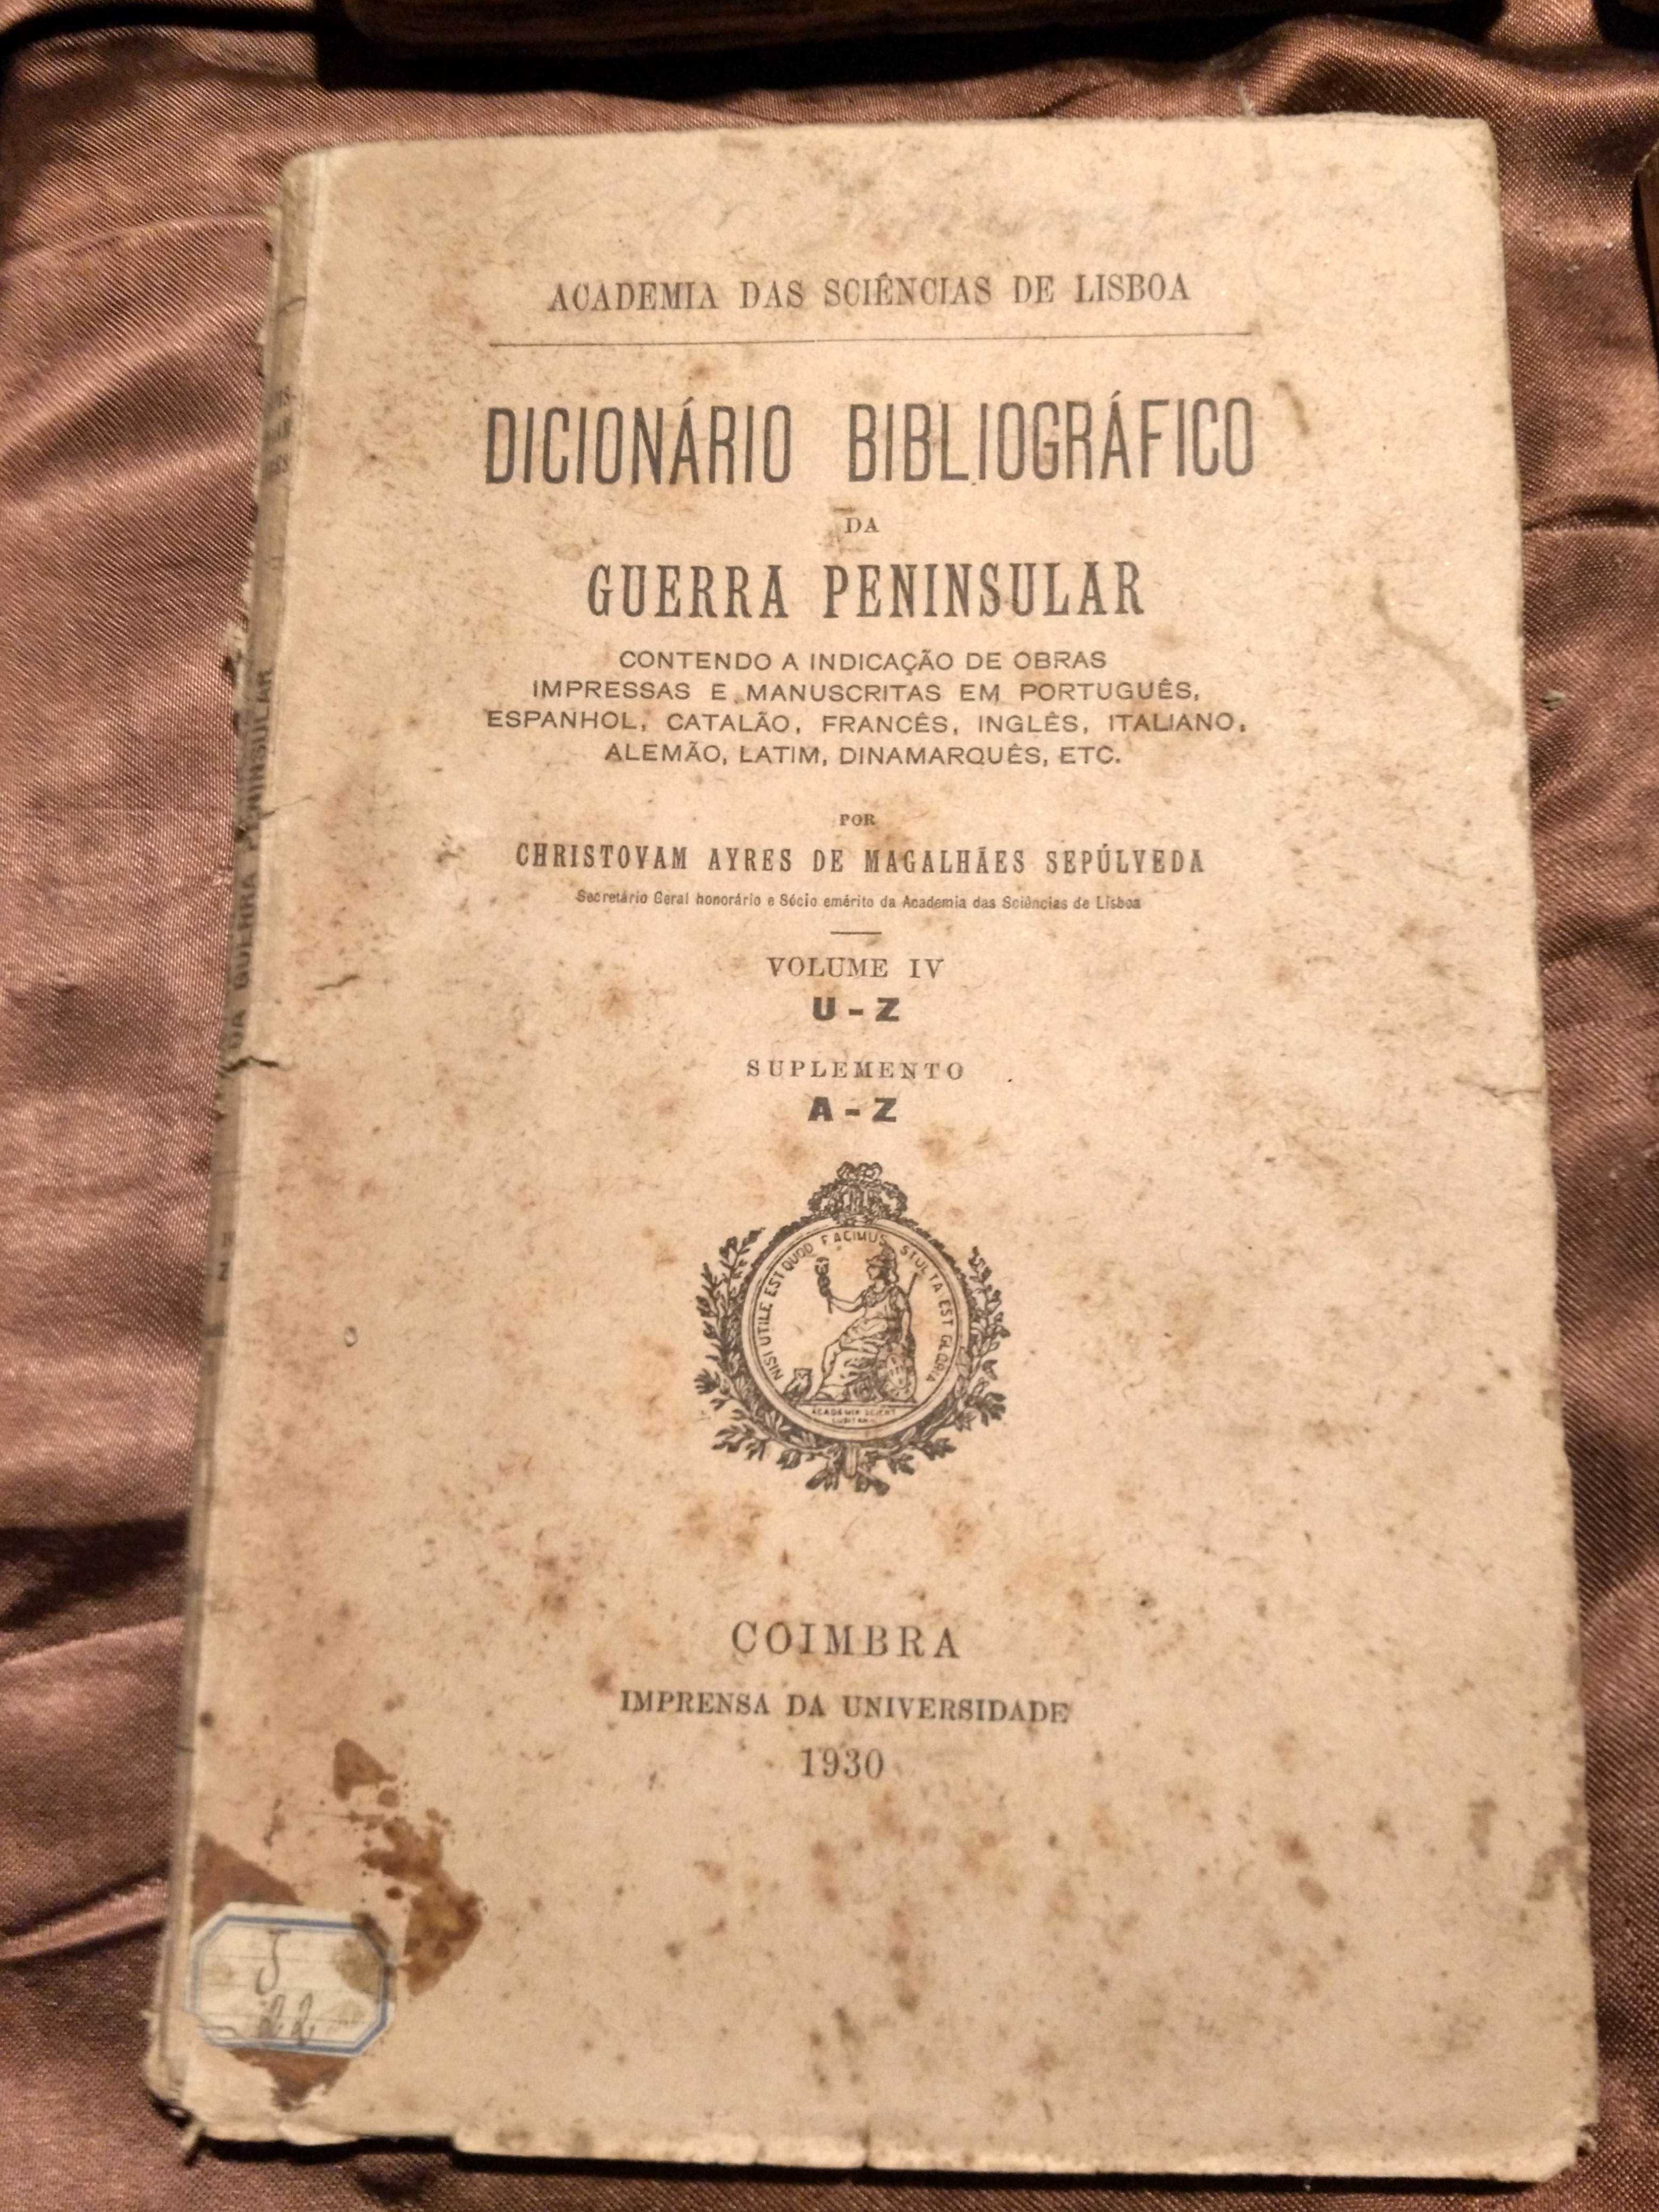 Diccionário Bibliográfico da Guerra Peninsular - Cristobal Sepulveda